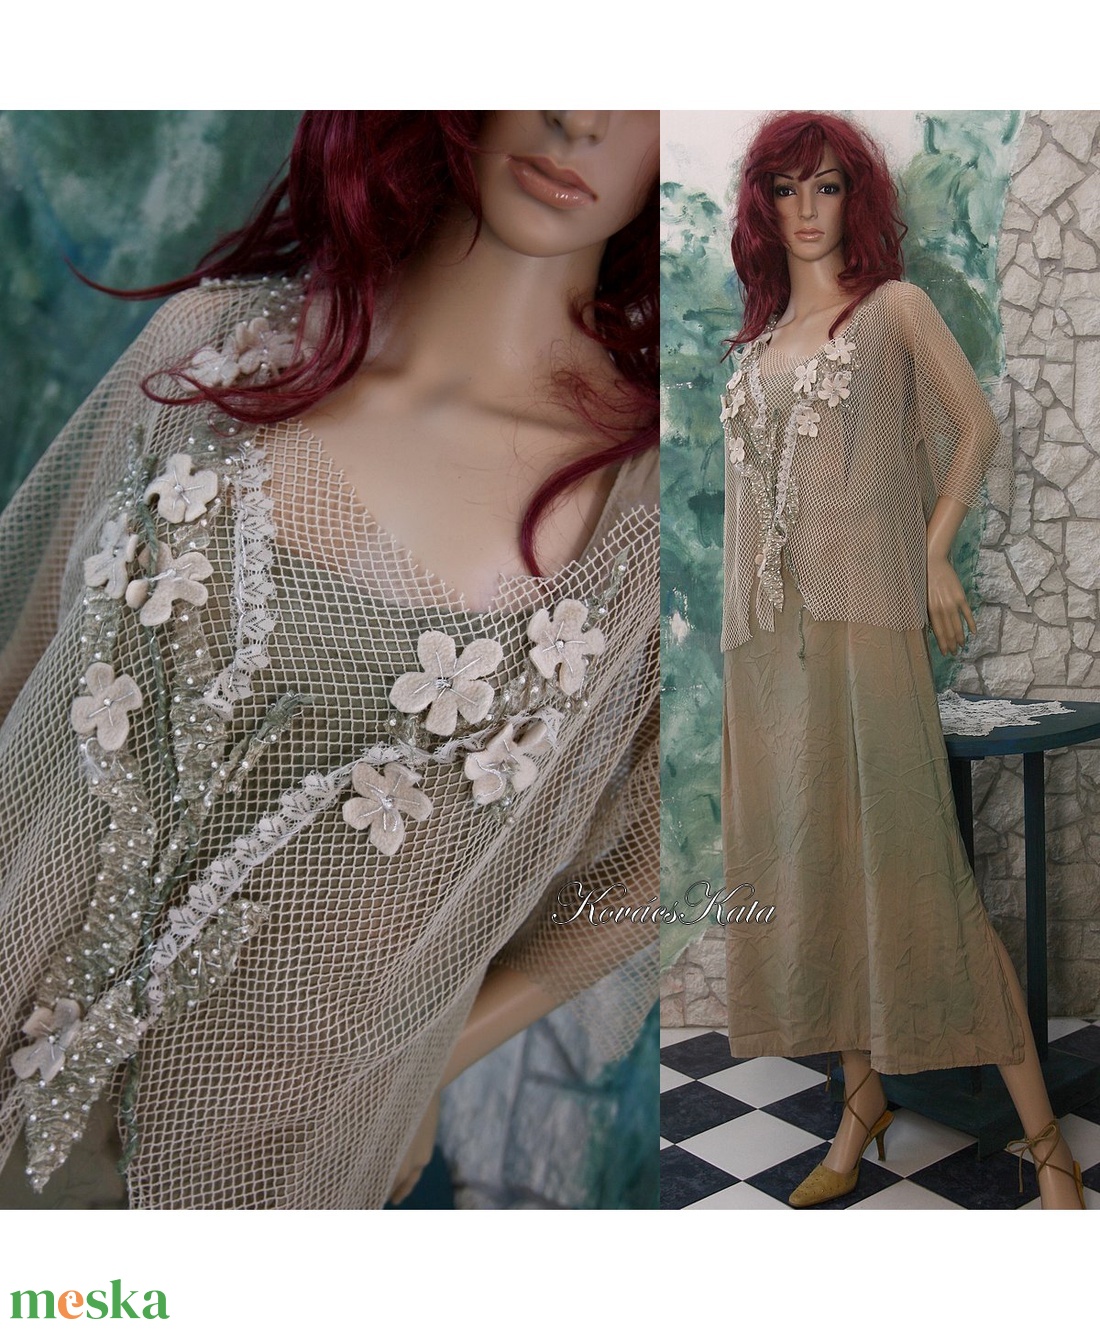 JASMINE-SZETT - shabby chic öltözet: batikolt selyemruha applikált necctoppal - ruha & divat - női ruha - ruha - Meska.hu